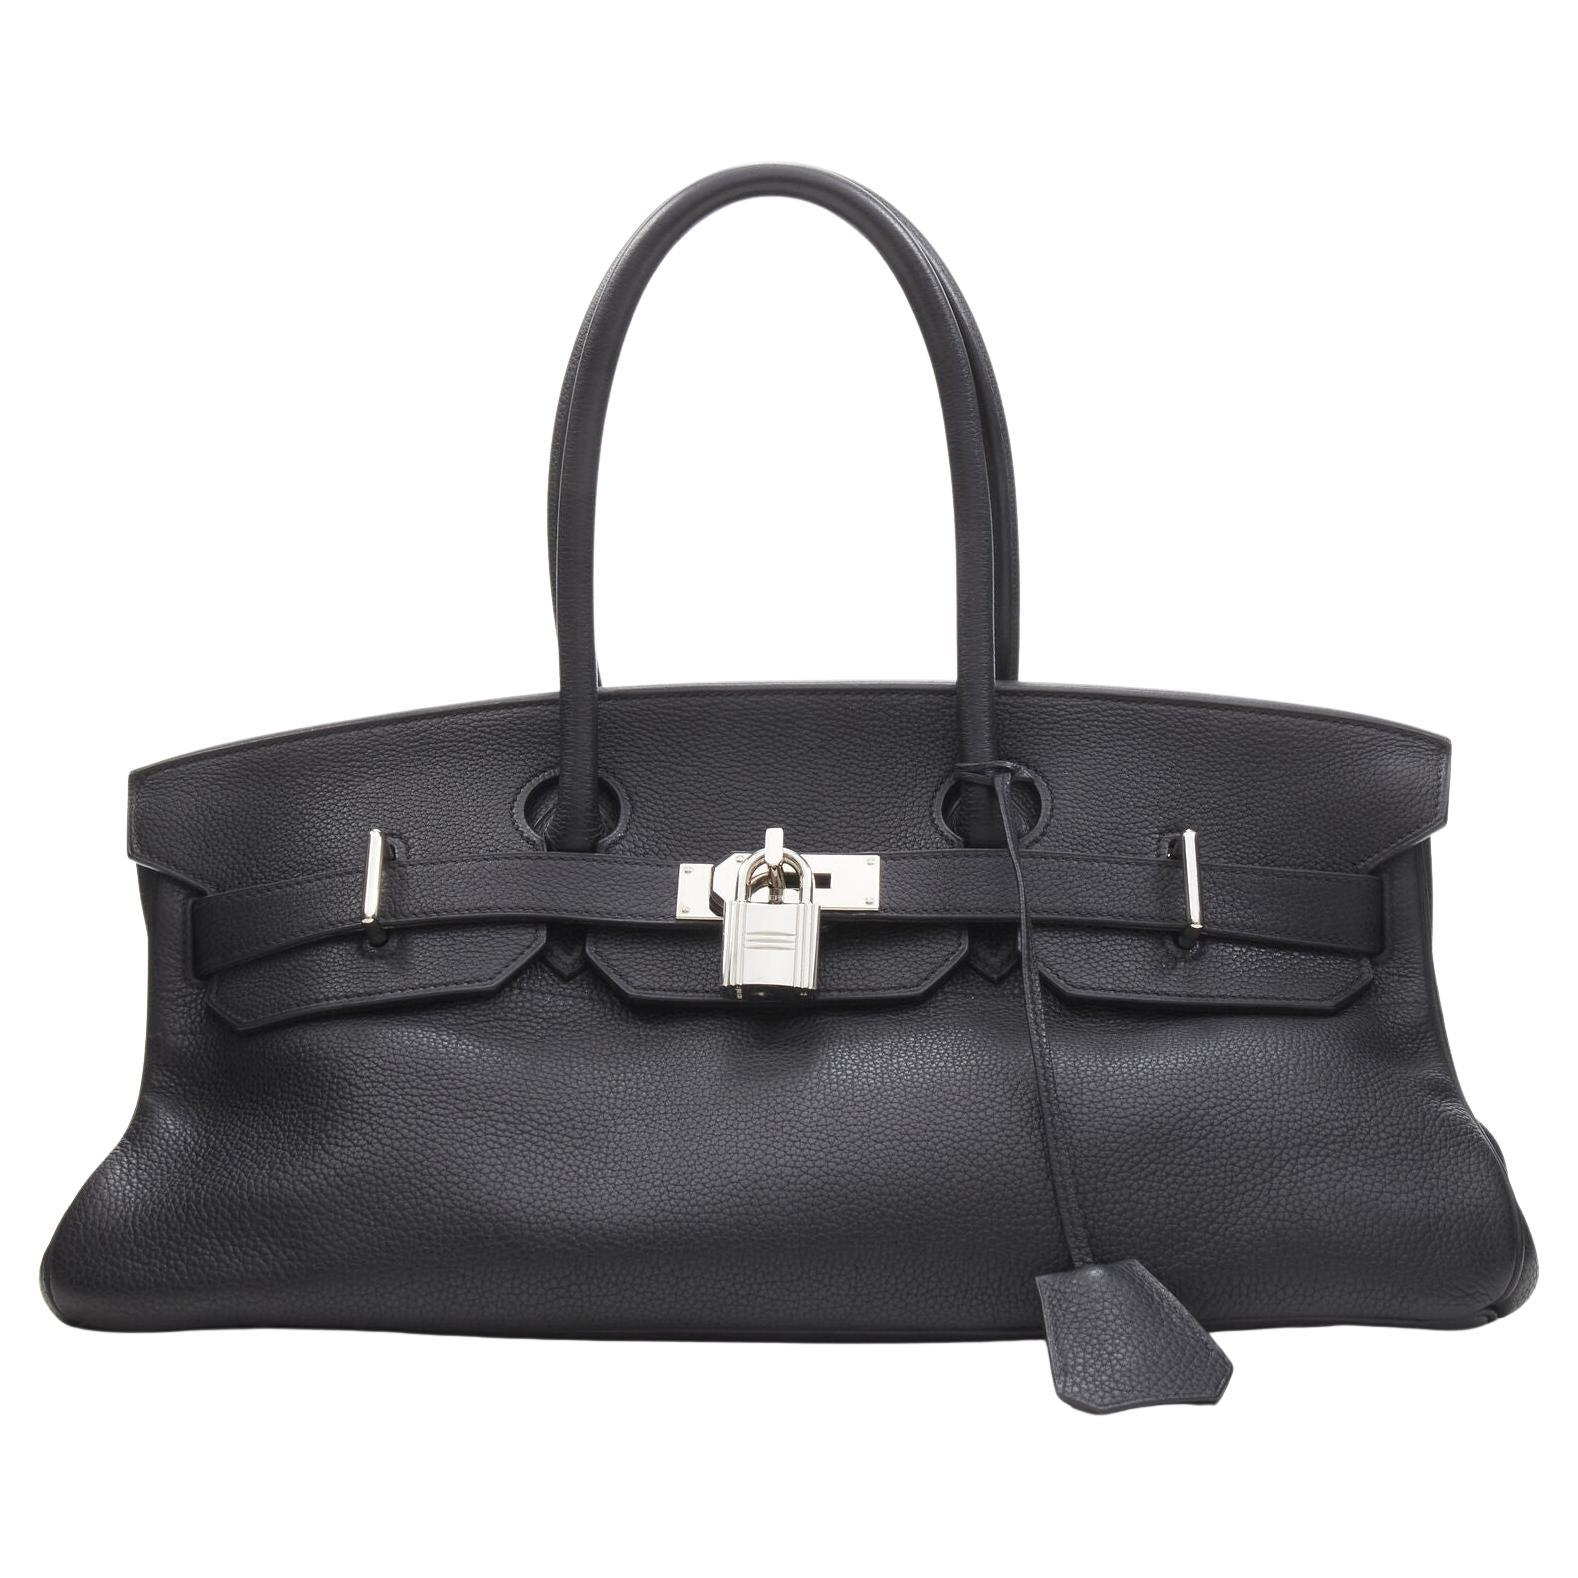 rare HERMES Birkin Jean Paul Gaultier black togo leather PHW long shoulder bag